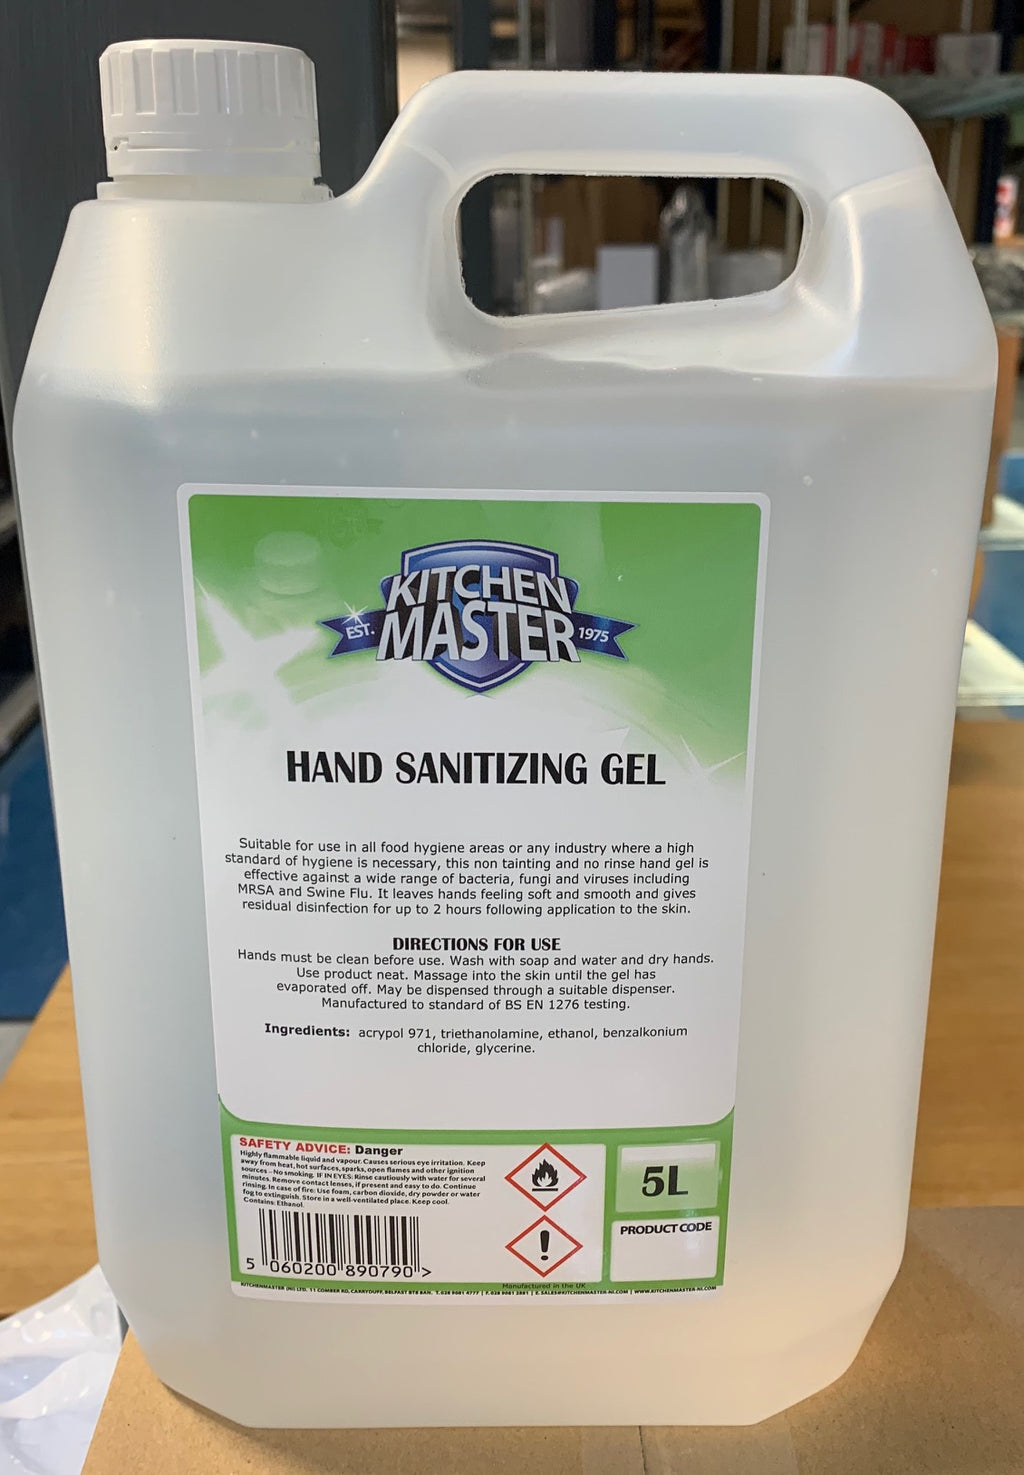 5 LT Hand sanitizing gel